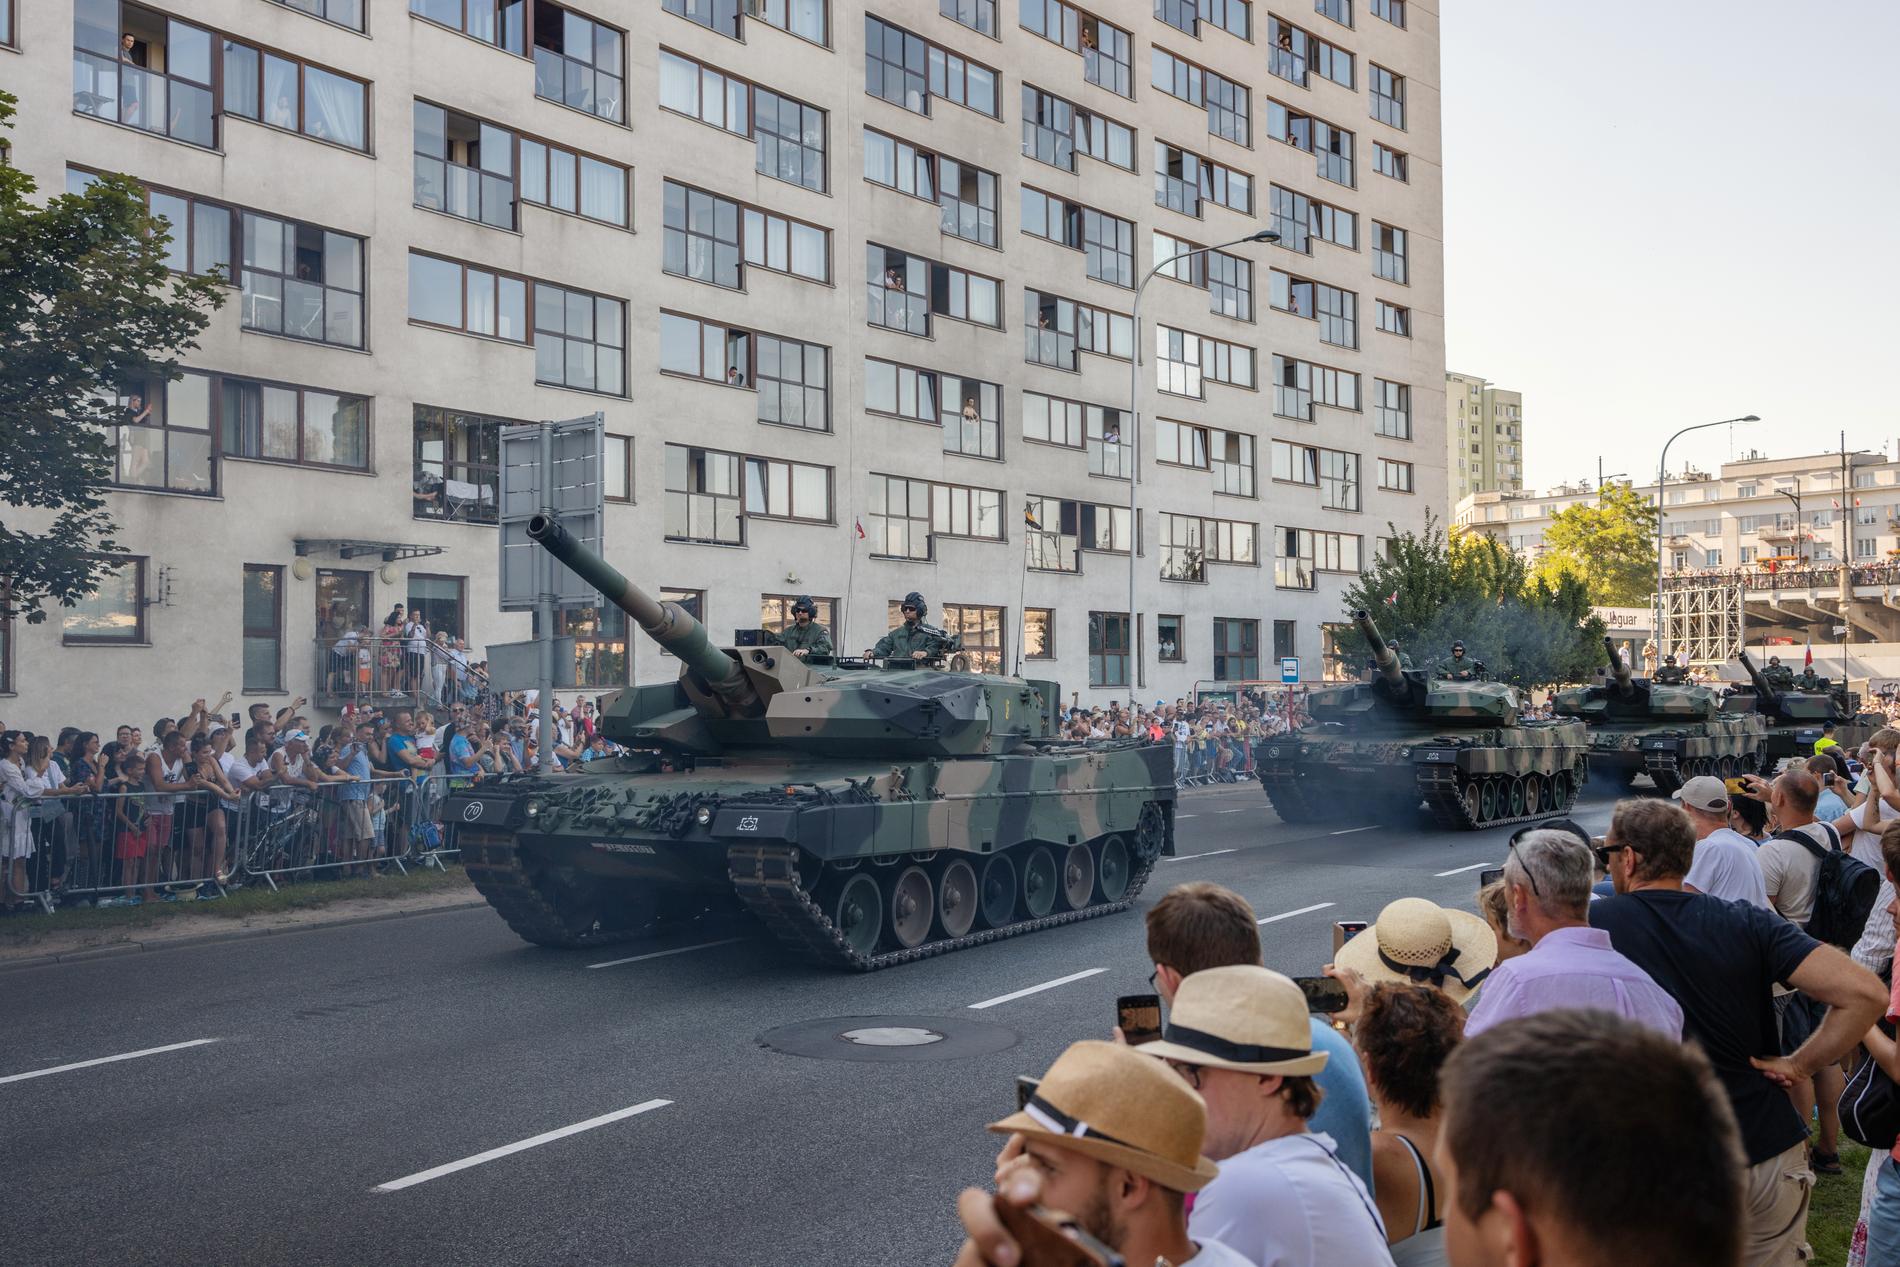 Parata: parata militare in Polonia nel mese di agosto. 